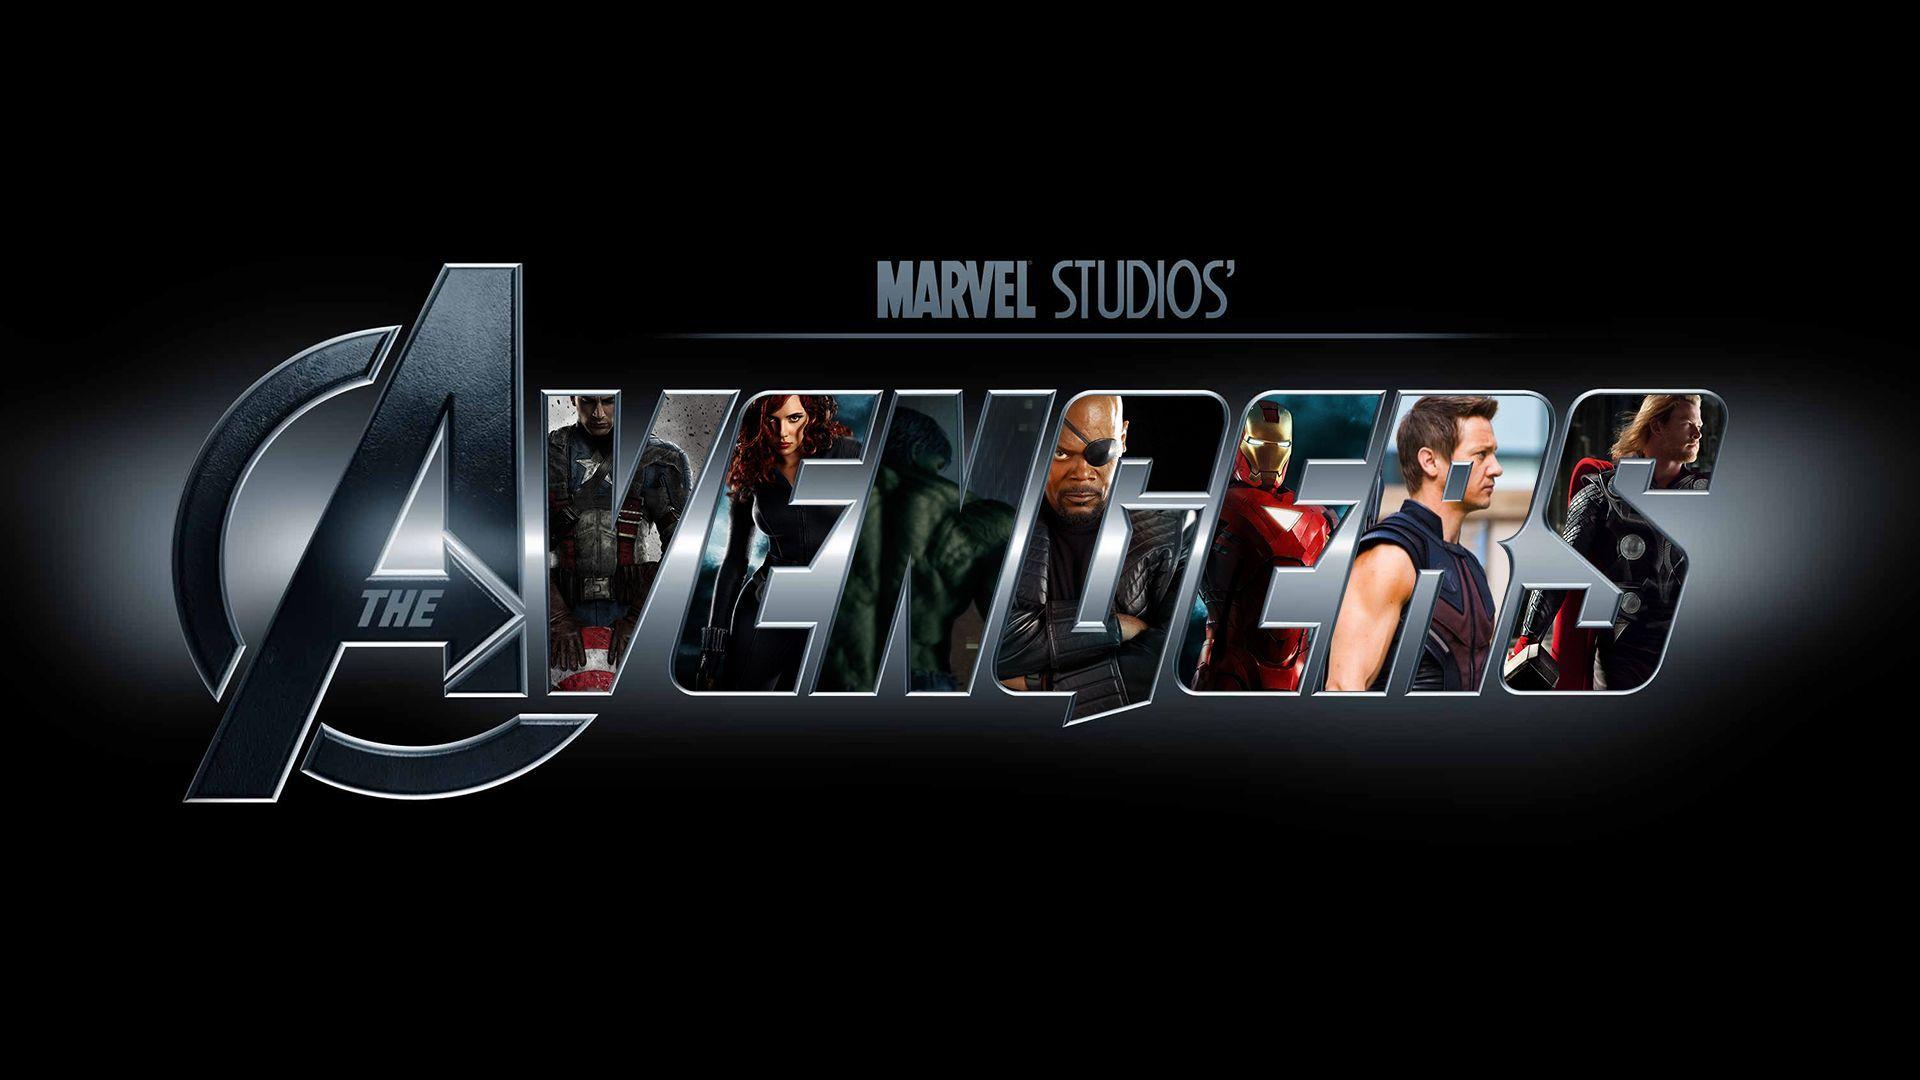 avengers logo background wallpaper. Desktop Background for Free